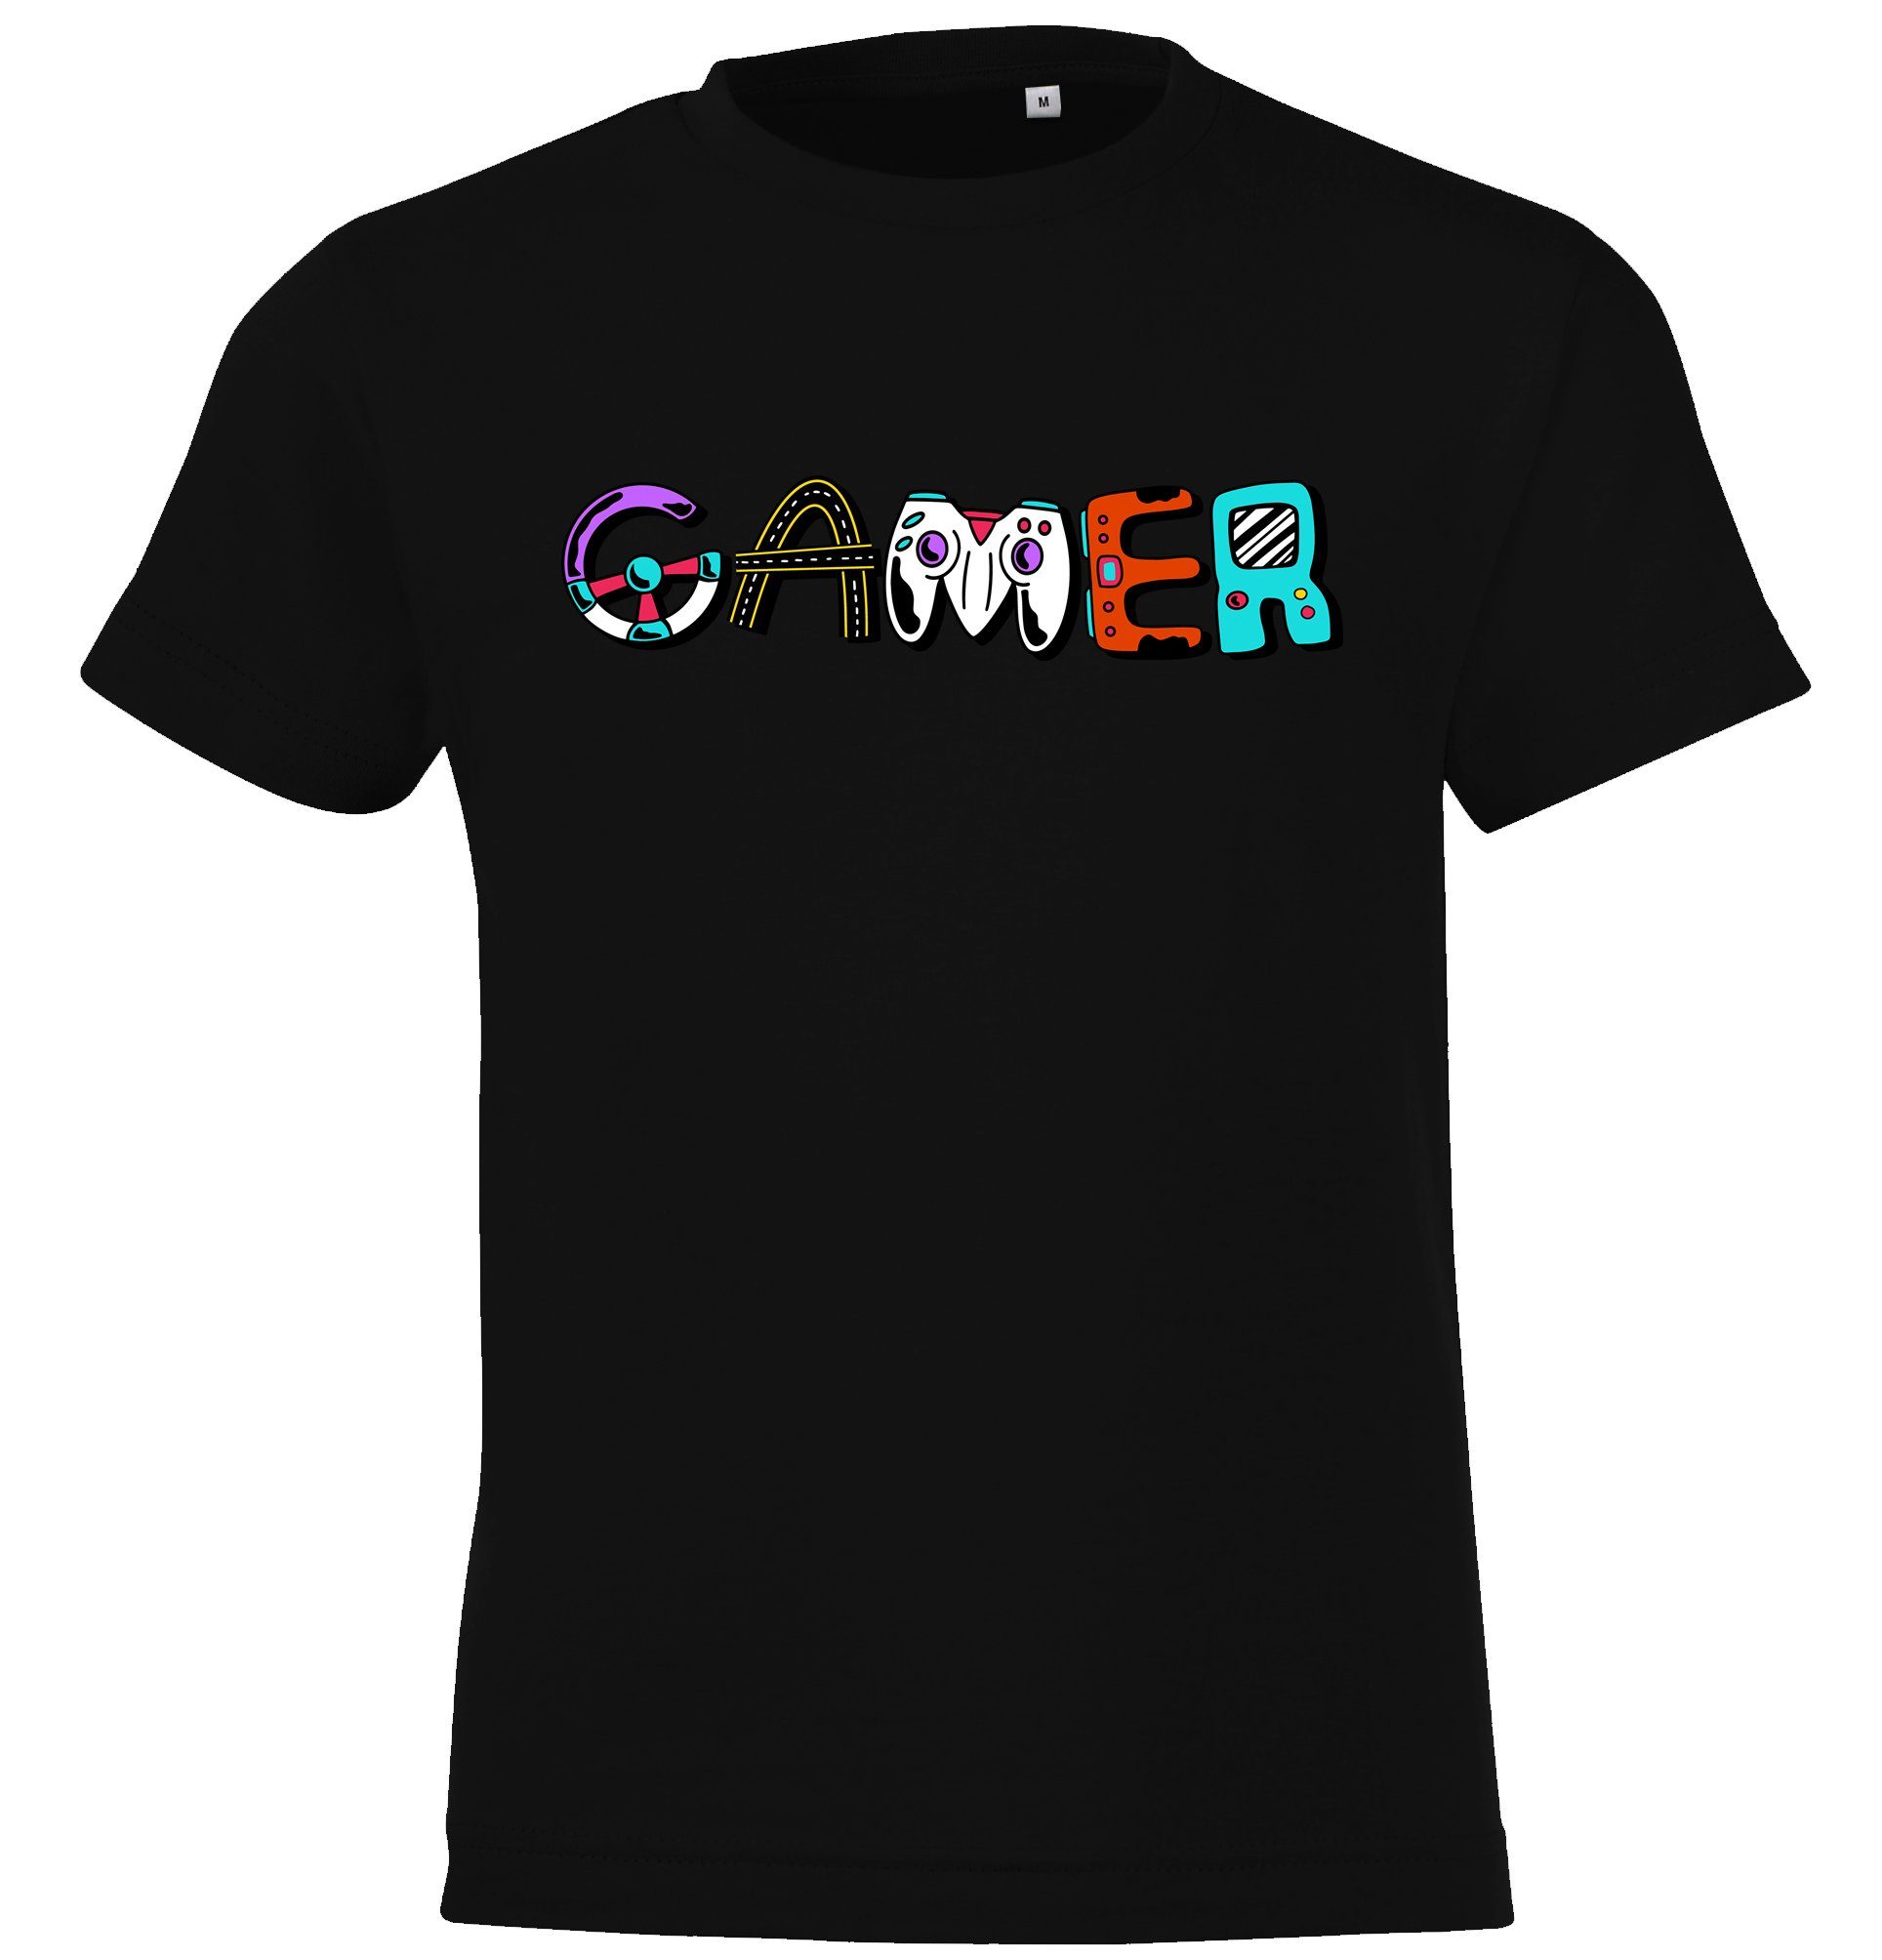 Youth Designz Jungen für Gamer T-Shirt Schwarz Frontprint mit Kinder Mädchen und trendigem Shirt